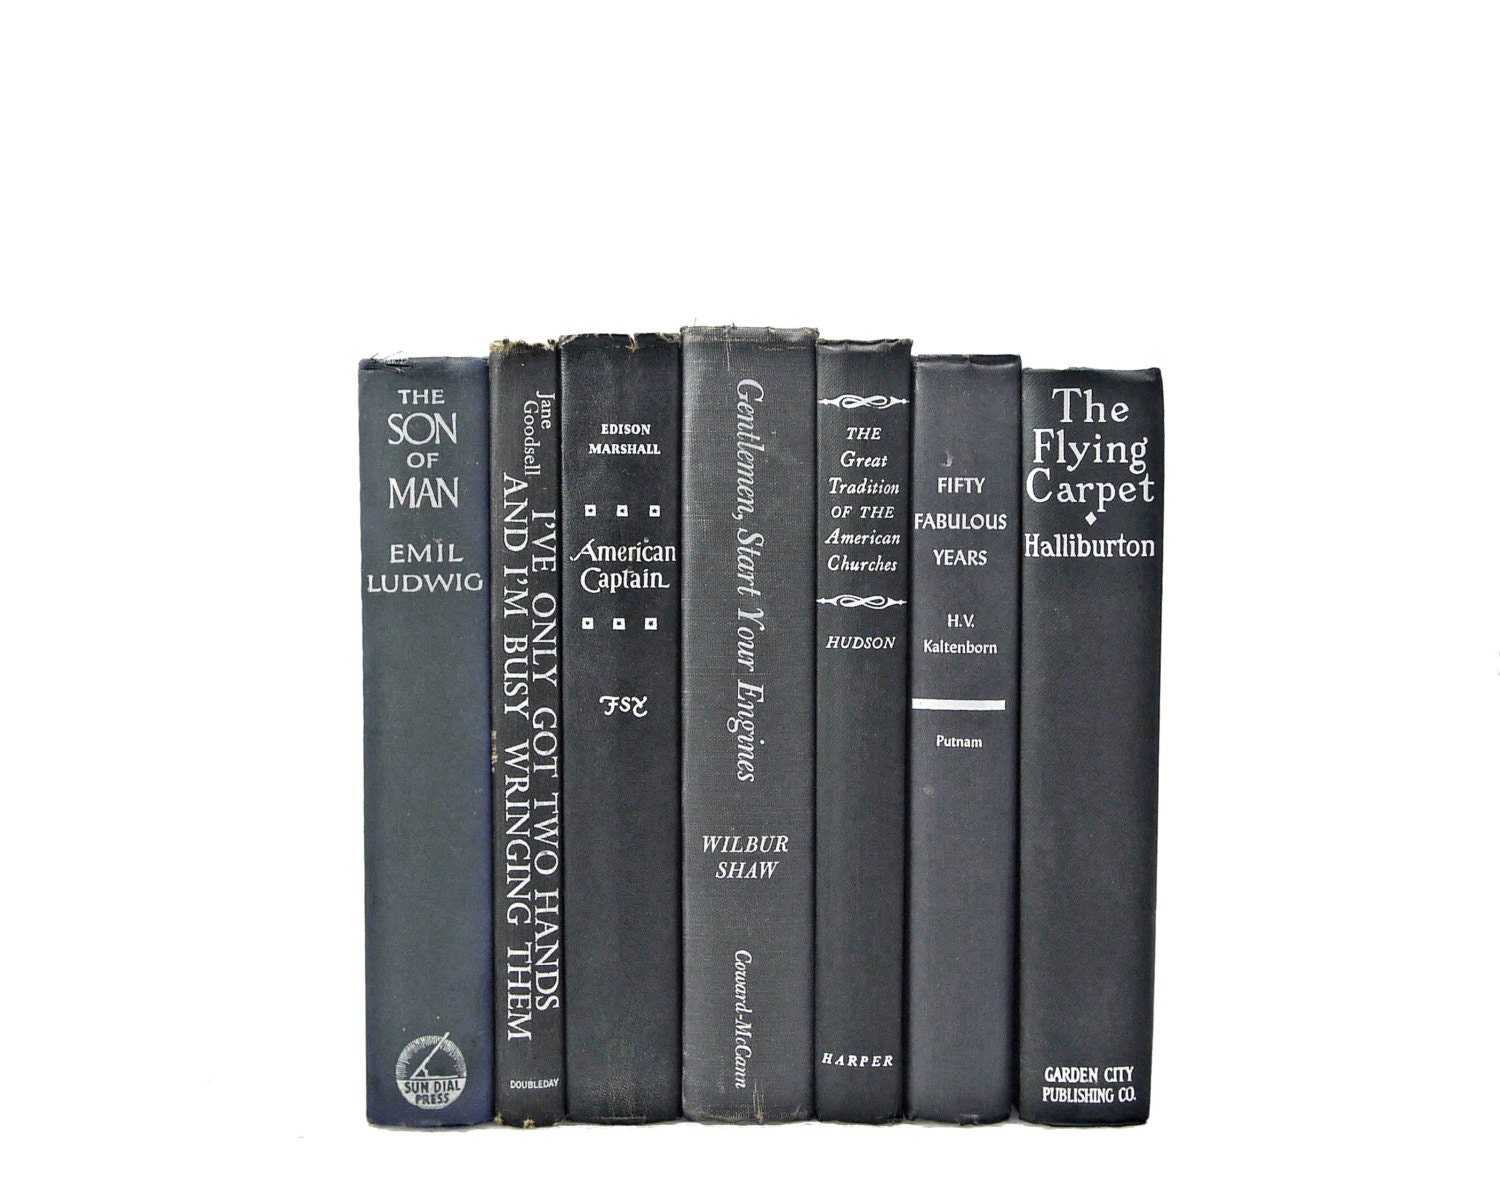 BLACK GRAY SILVER 1940s Decorative Books, Shabby Chic, Antique, Home Book Decor,  Wedding Decor, Book Collection Set, Old  interior design, - HucksterHaven